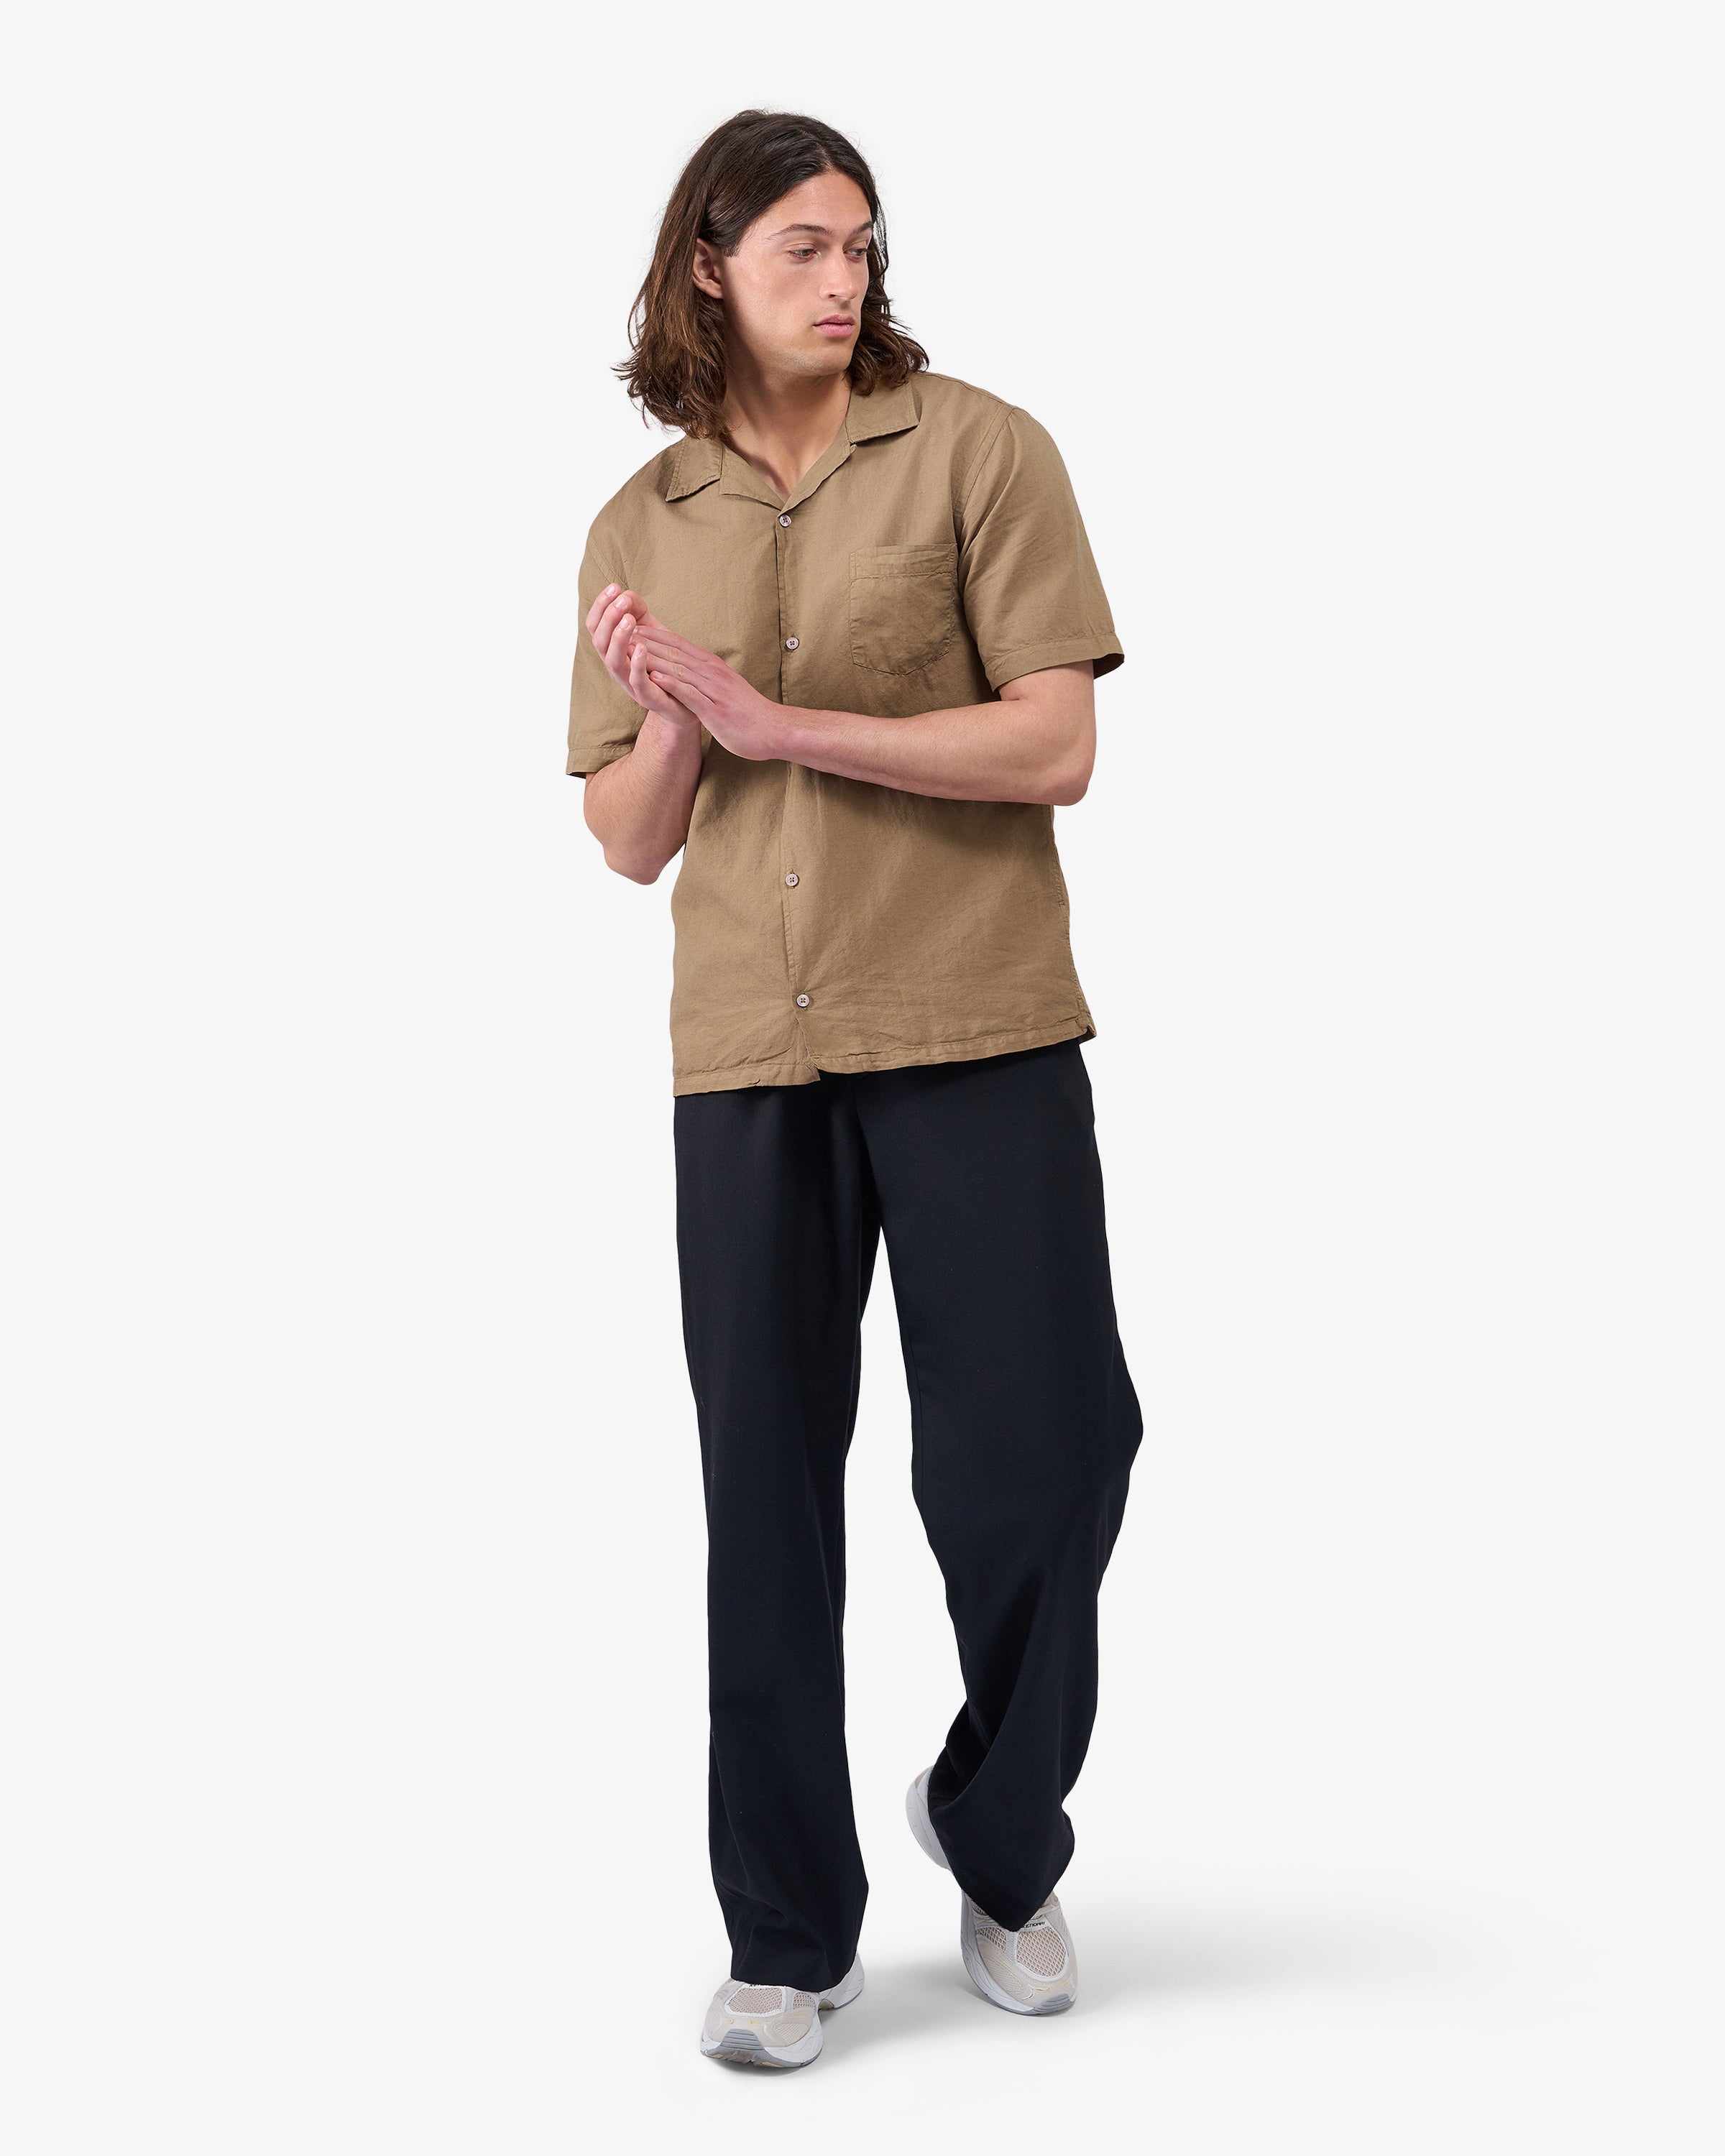 Linen Short Sleeved Shirt - Petrol Blue